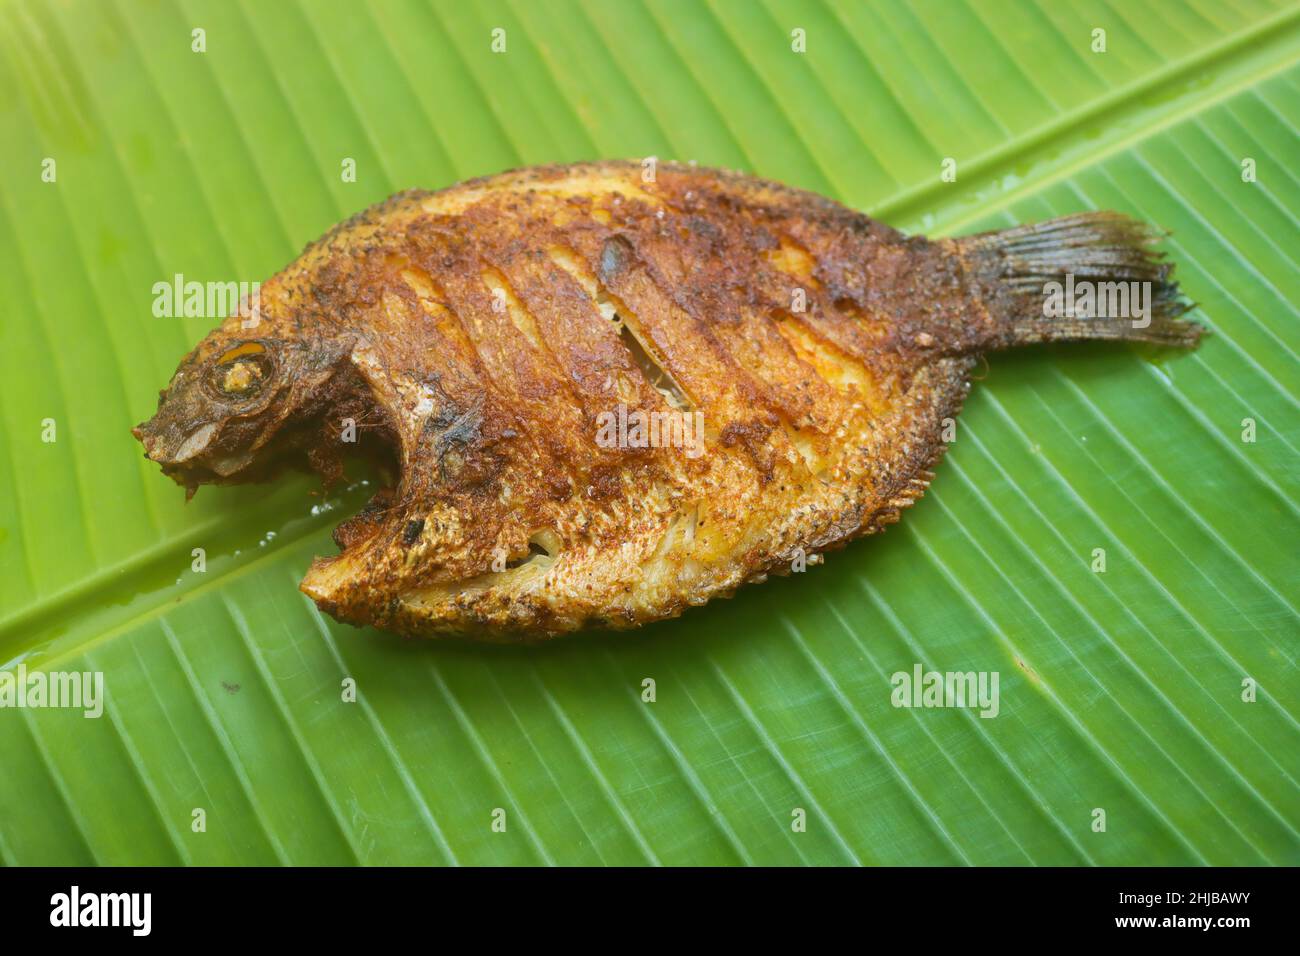 Karimeen fry kerala fish fry Stock Photo